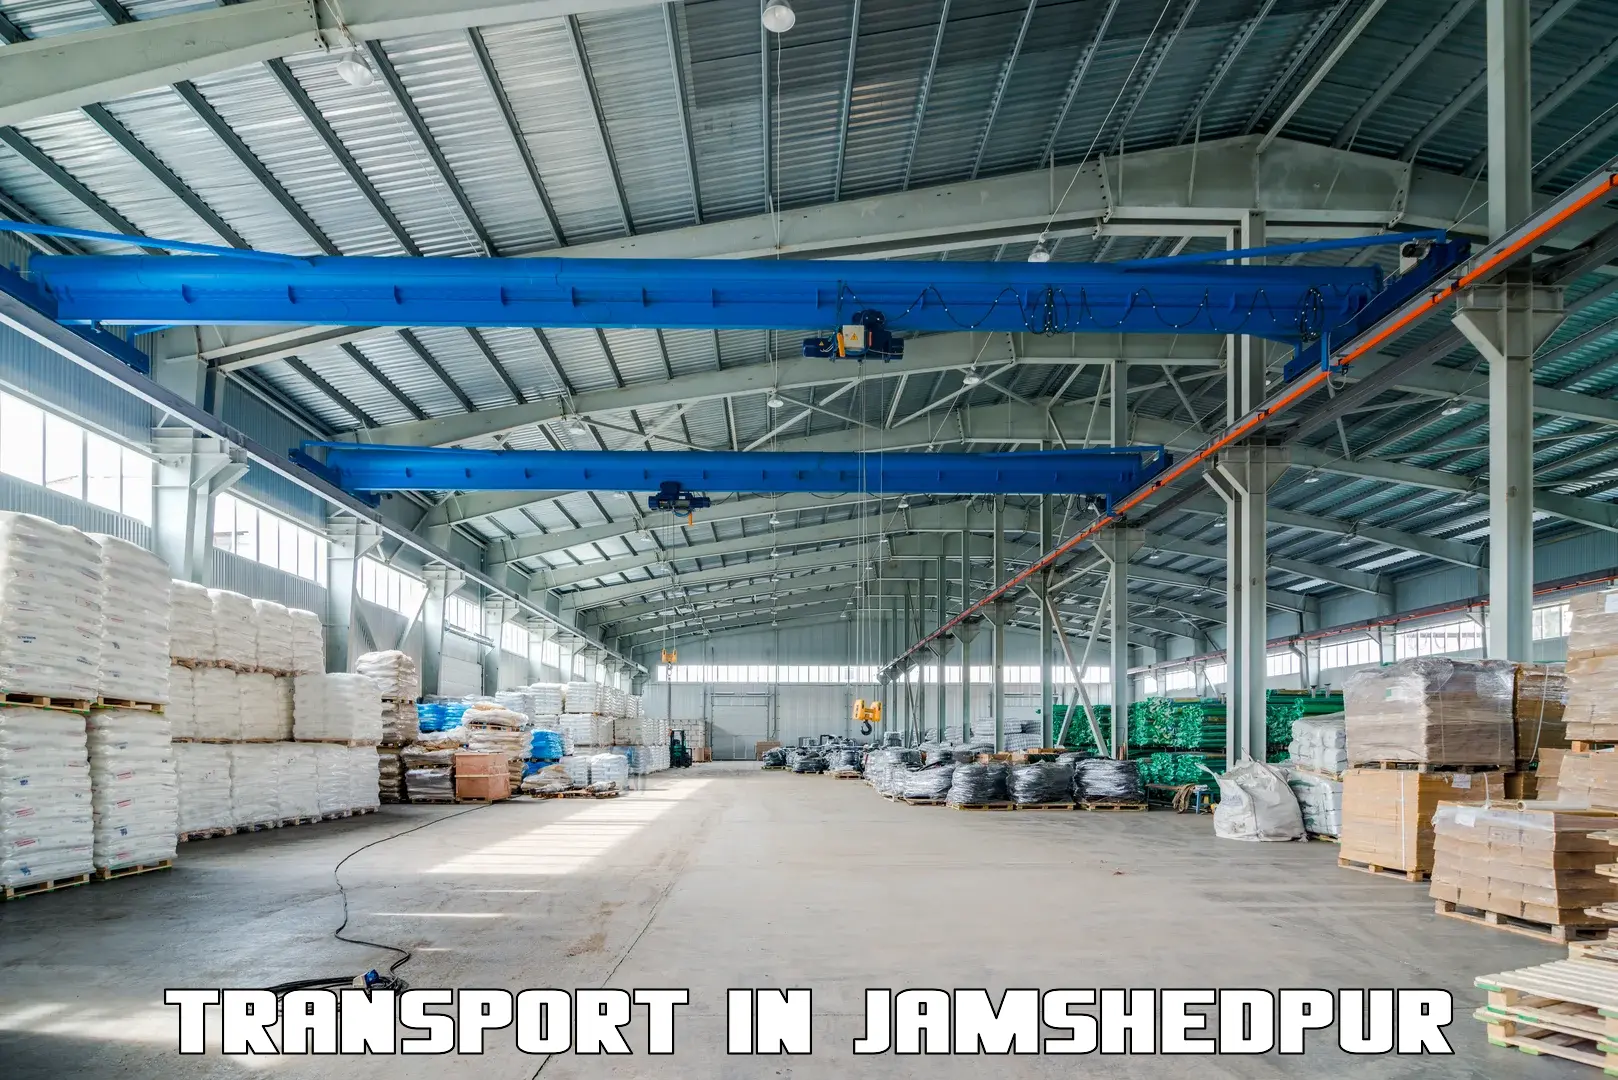 Transportation services in Jamshedpur